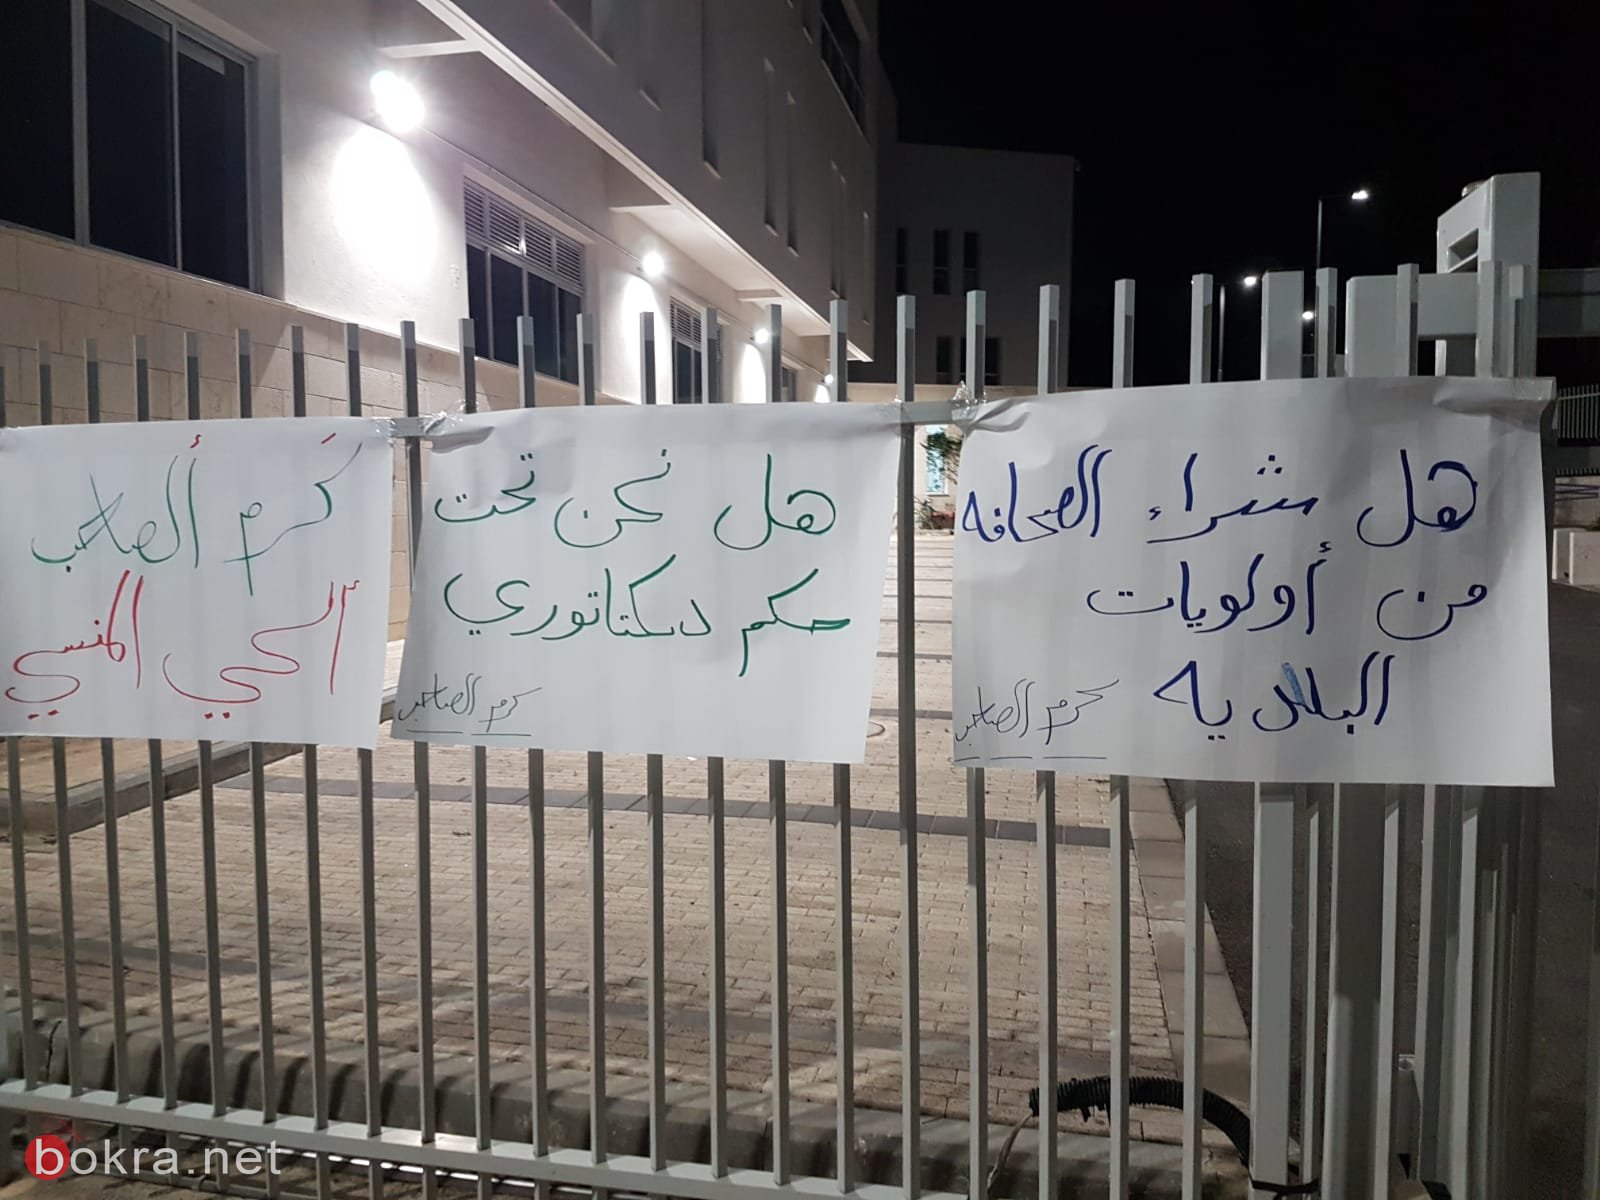 مواطنون من الناصرة يتظاهرون: هل تعلم البلدية بوجود حي كرم الصاحب؟-0